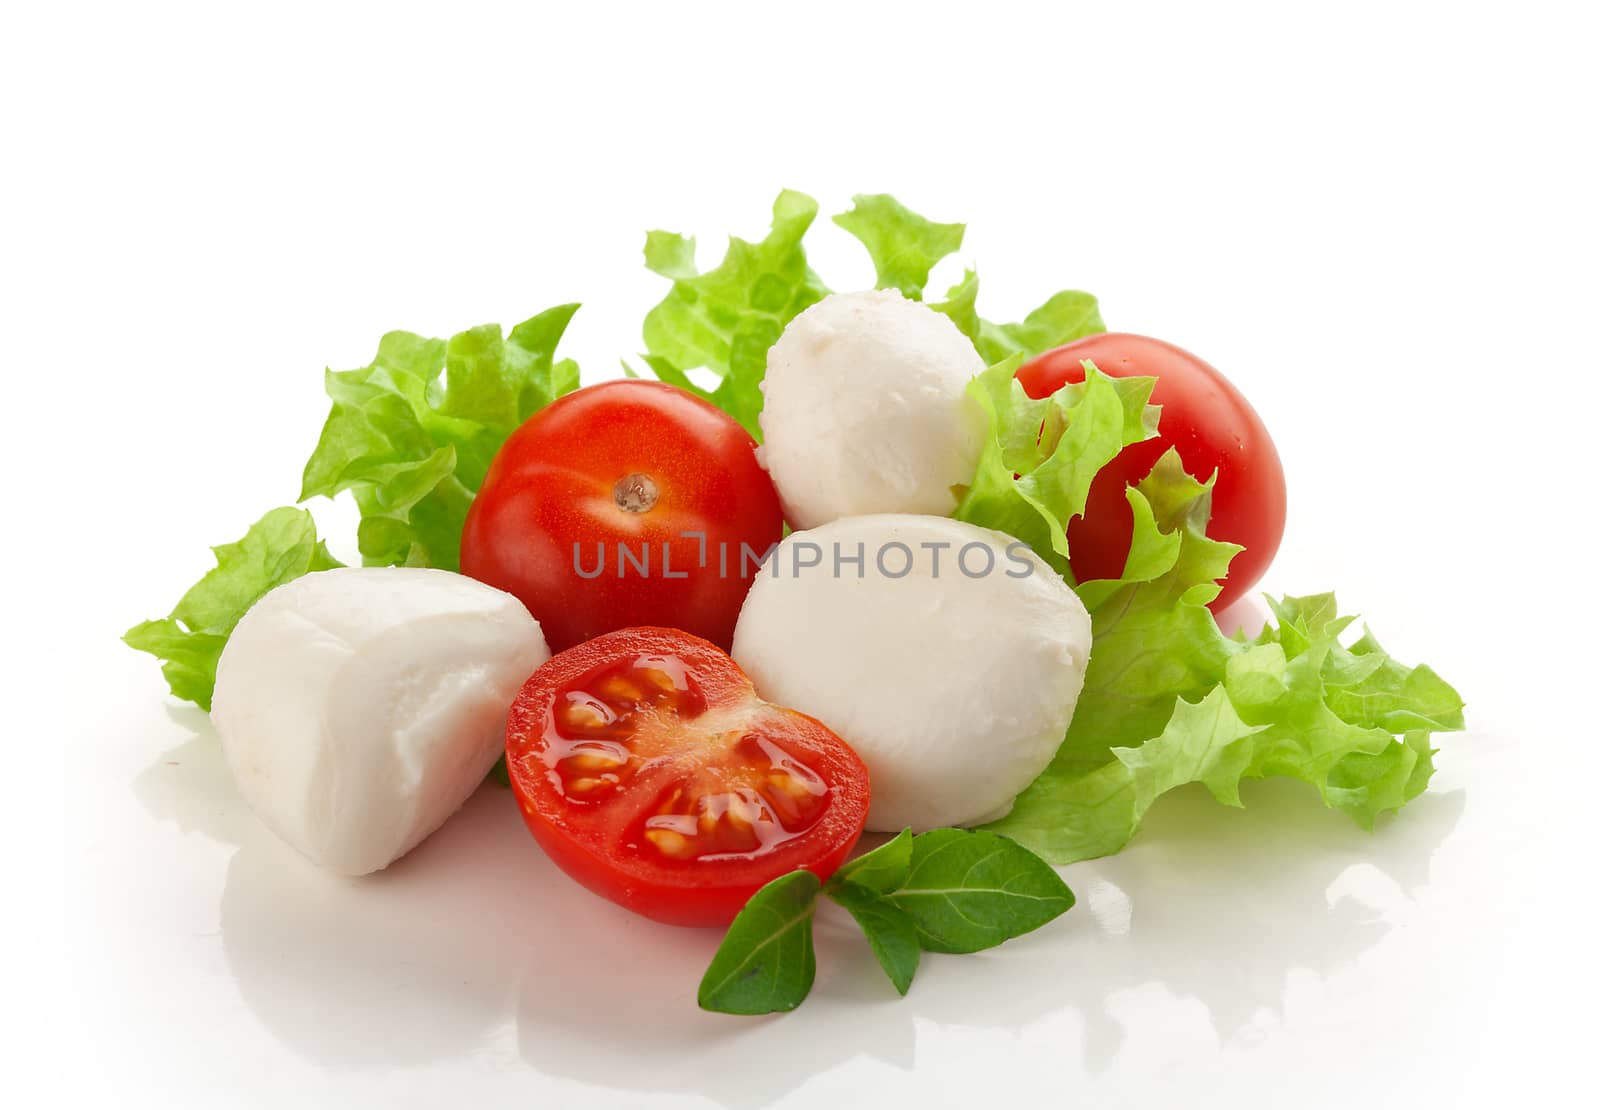 Small balls of Mozzarella with tomato cherry and fresh green lettuce